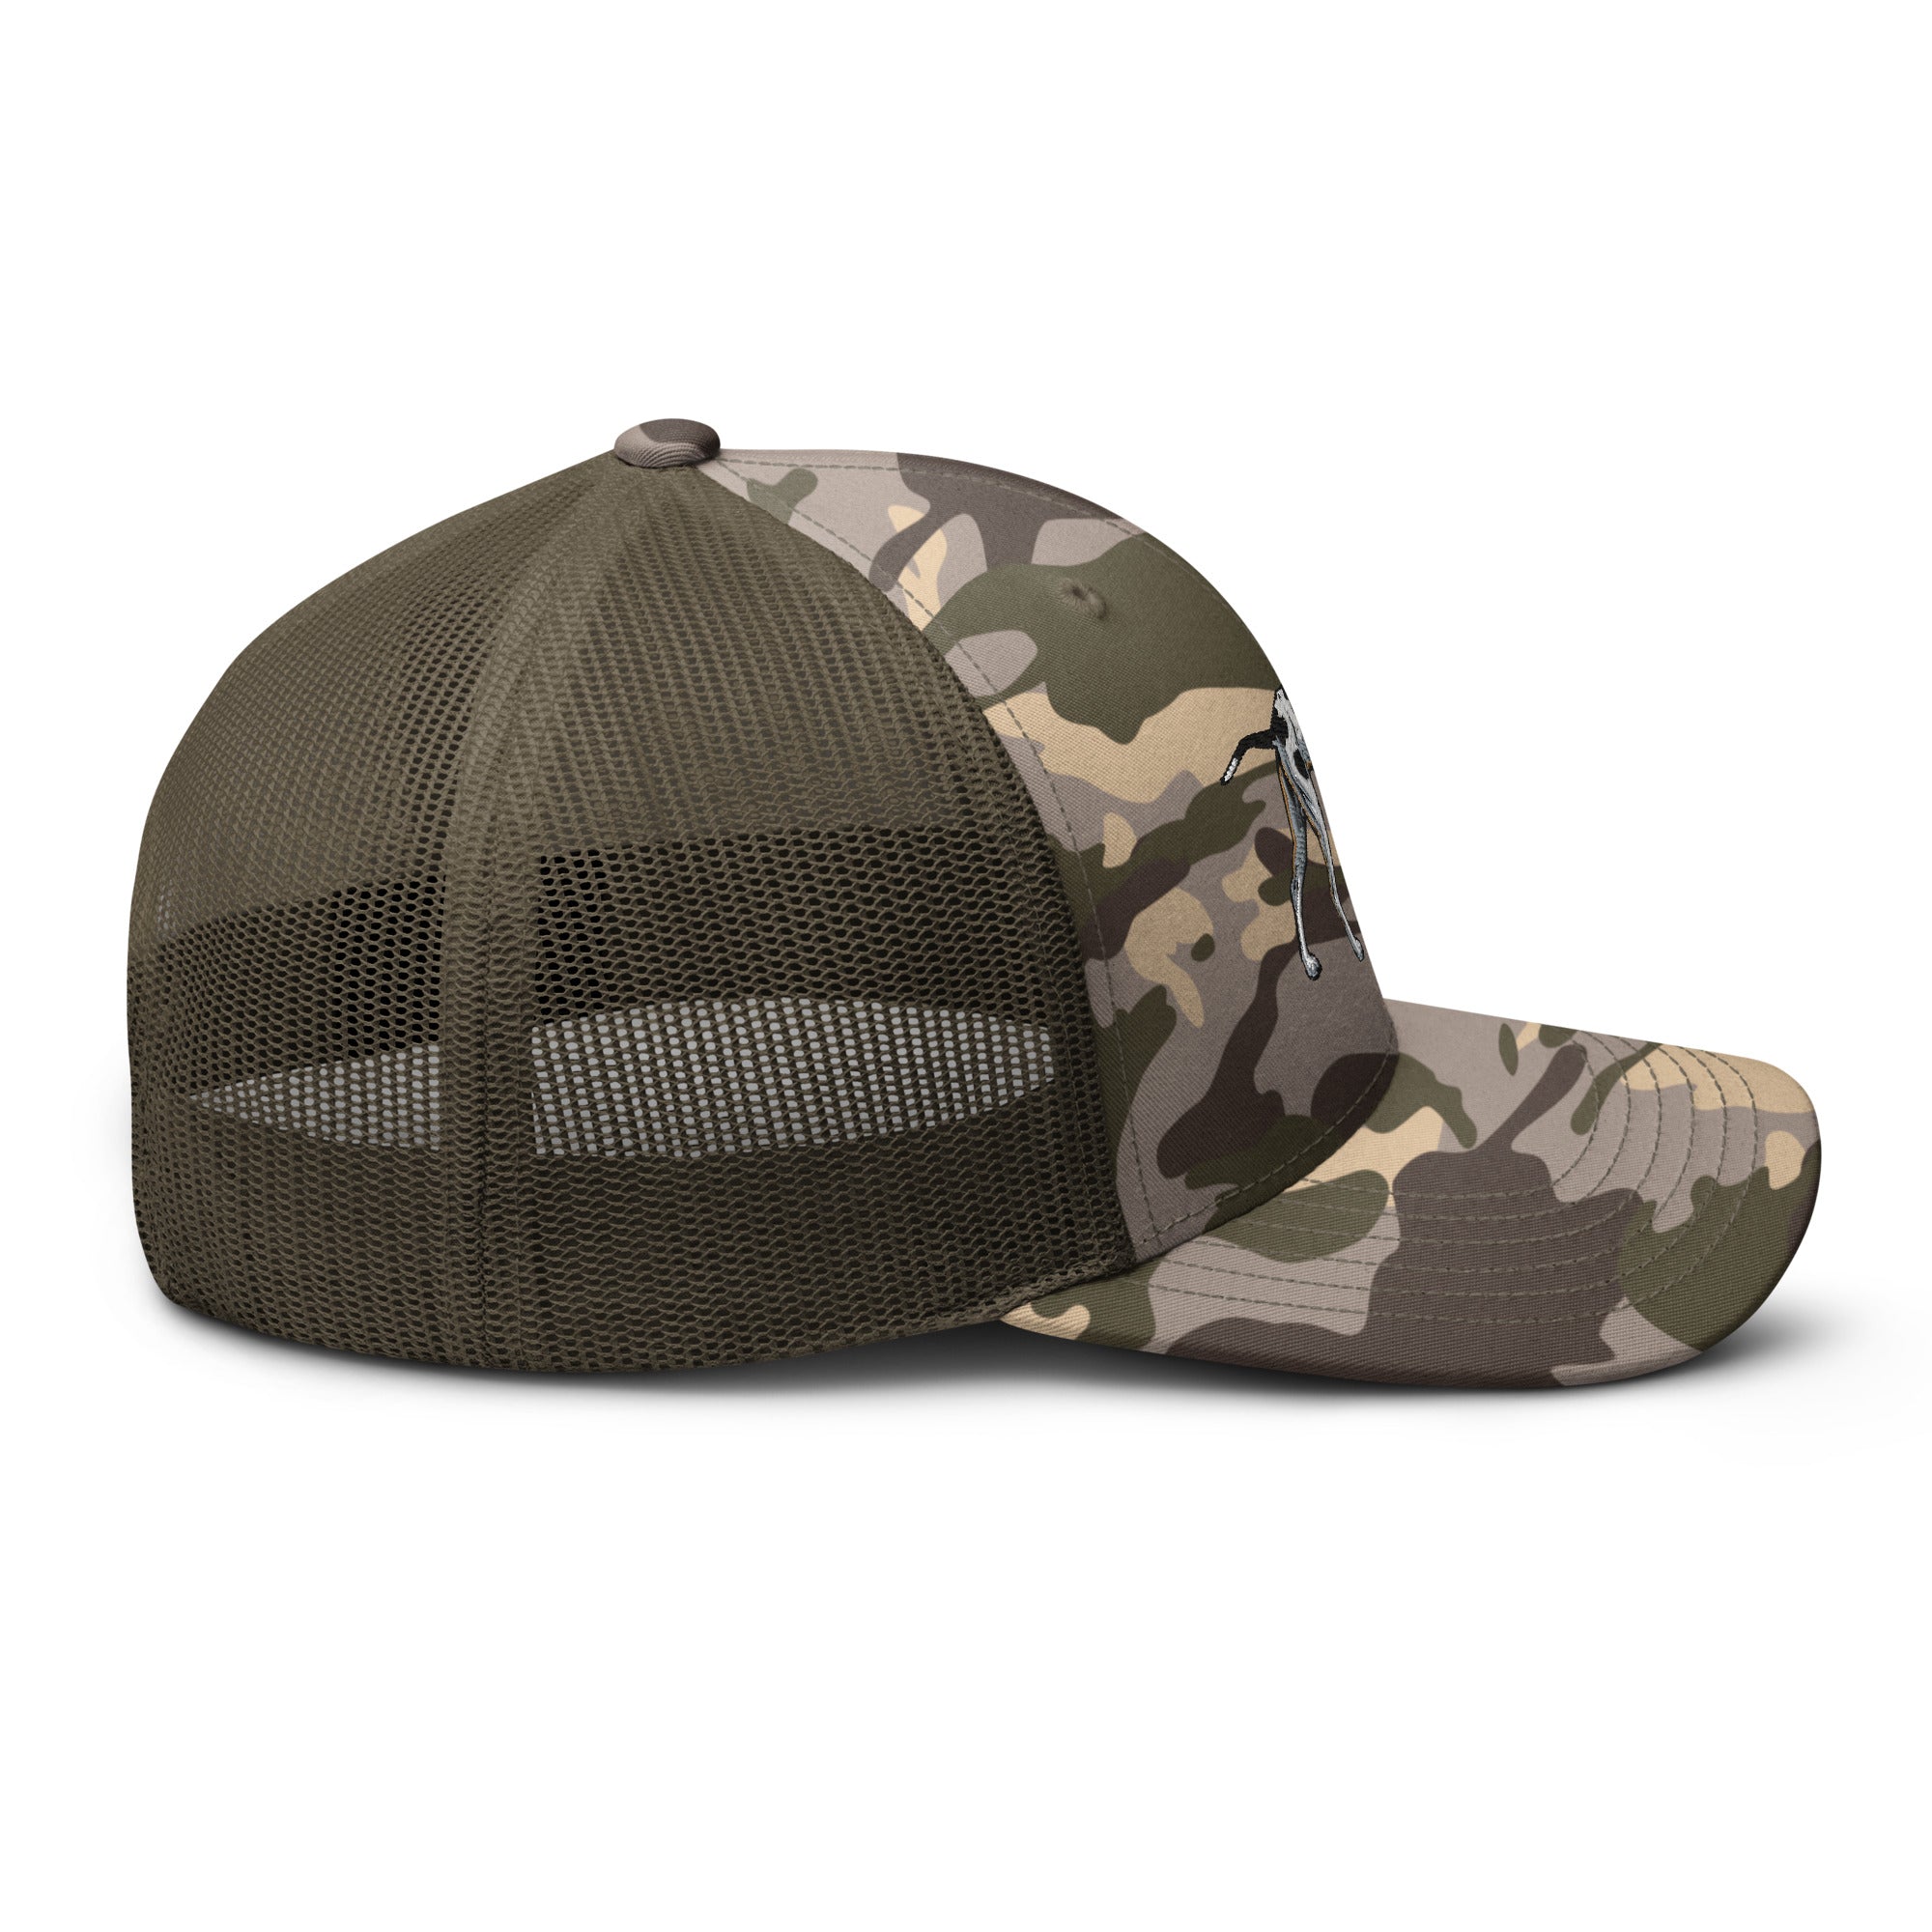 Pointer Dog Camouflage Trucker Hat